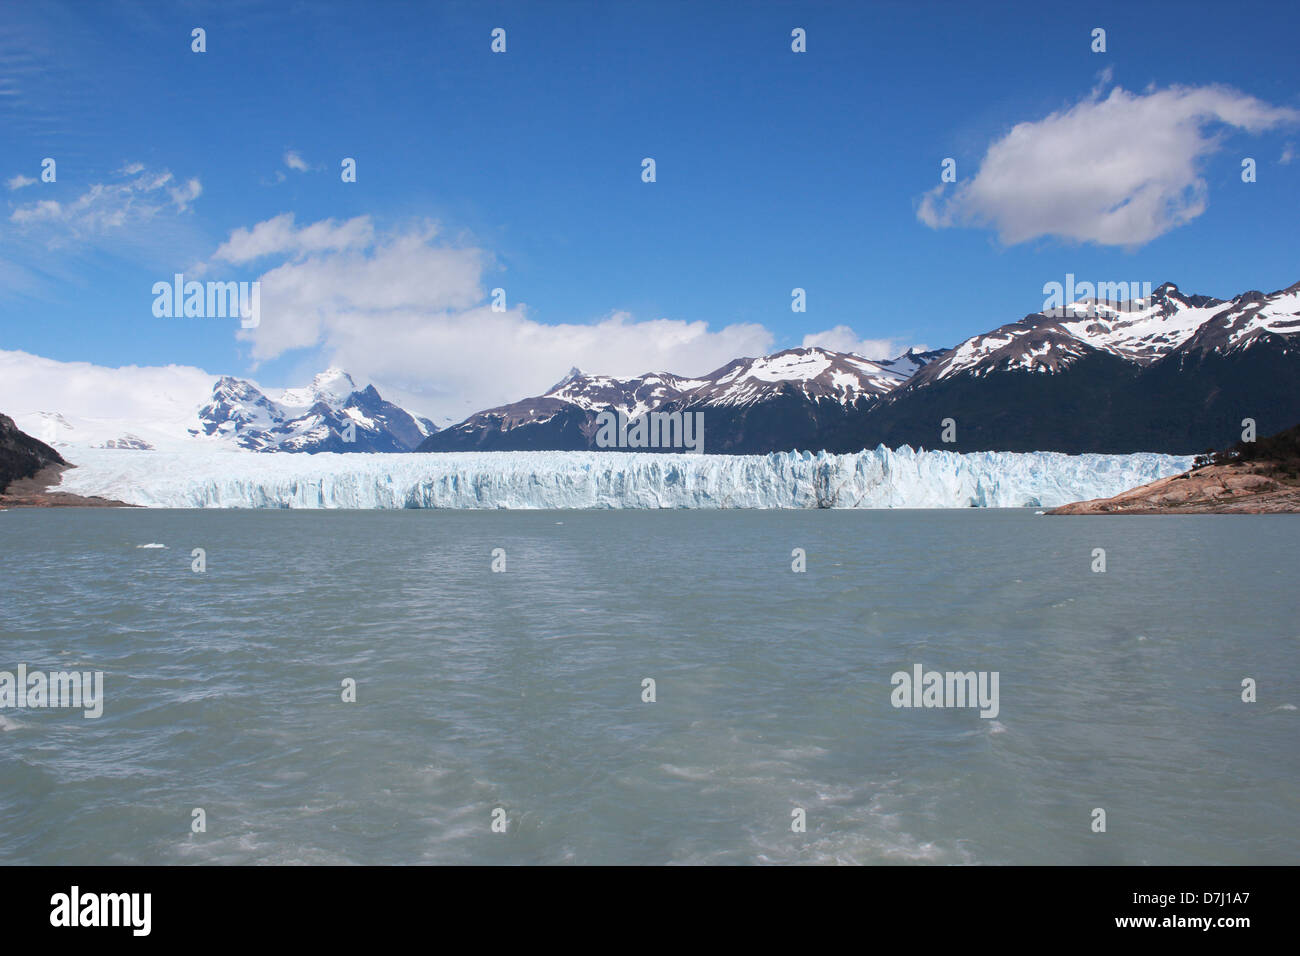 Argentinien Patagonien Patagonia Perito Moreno Glacier glaciar in national park Los Glaciares Stock Photo